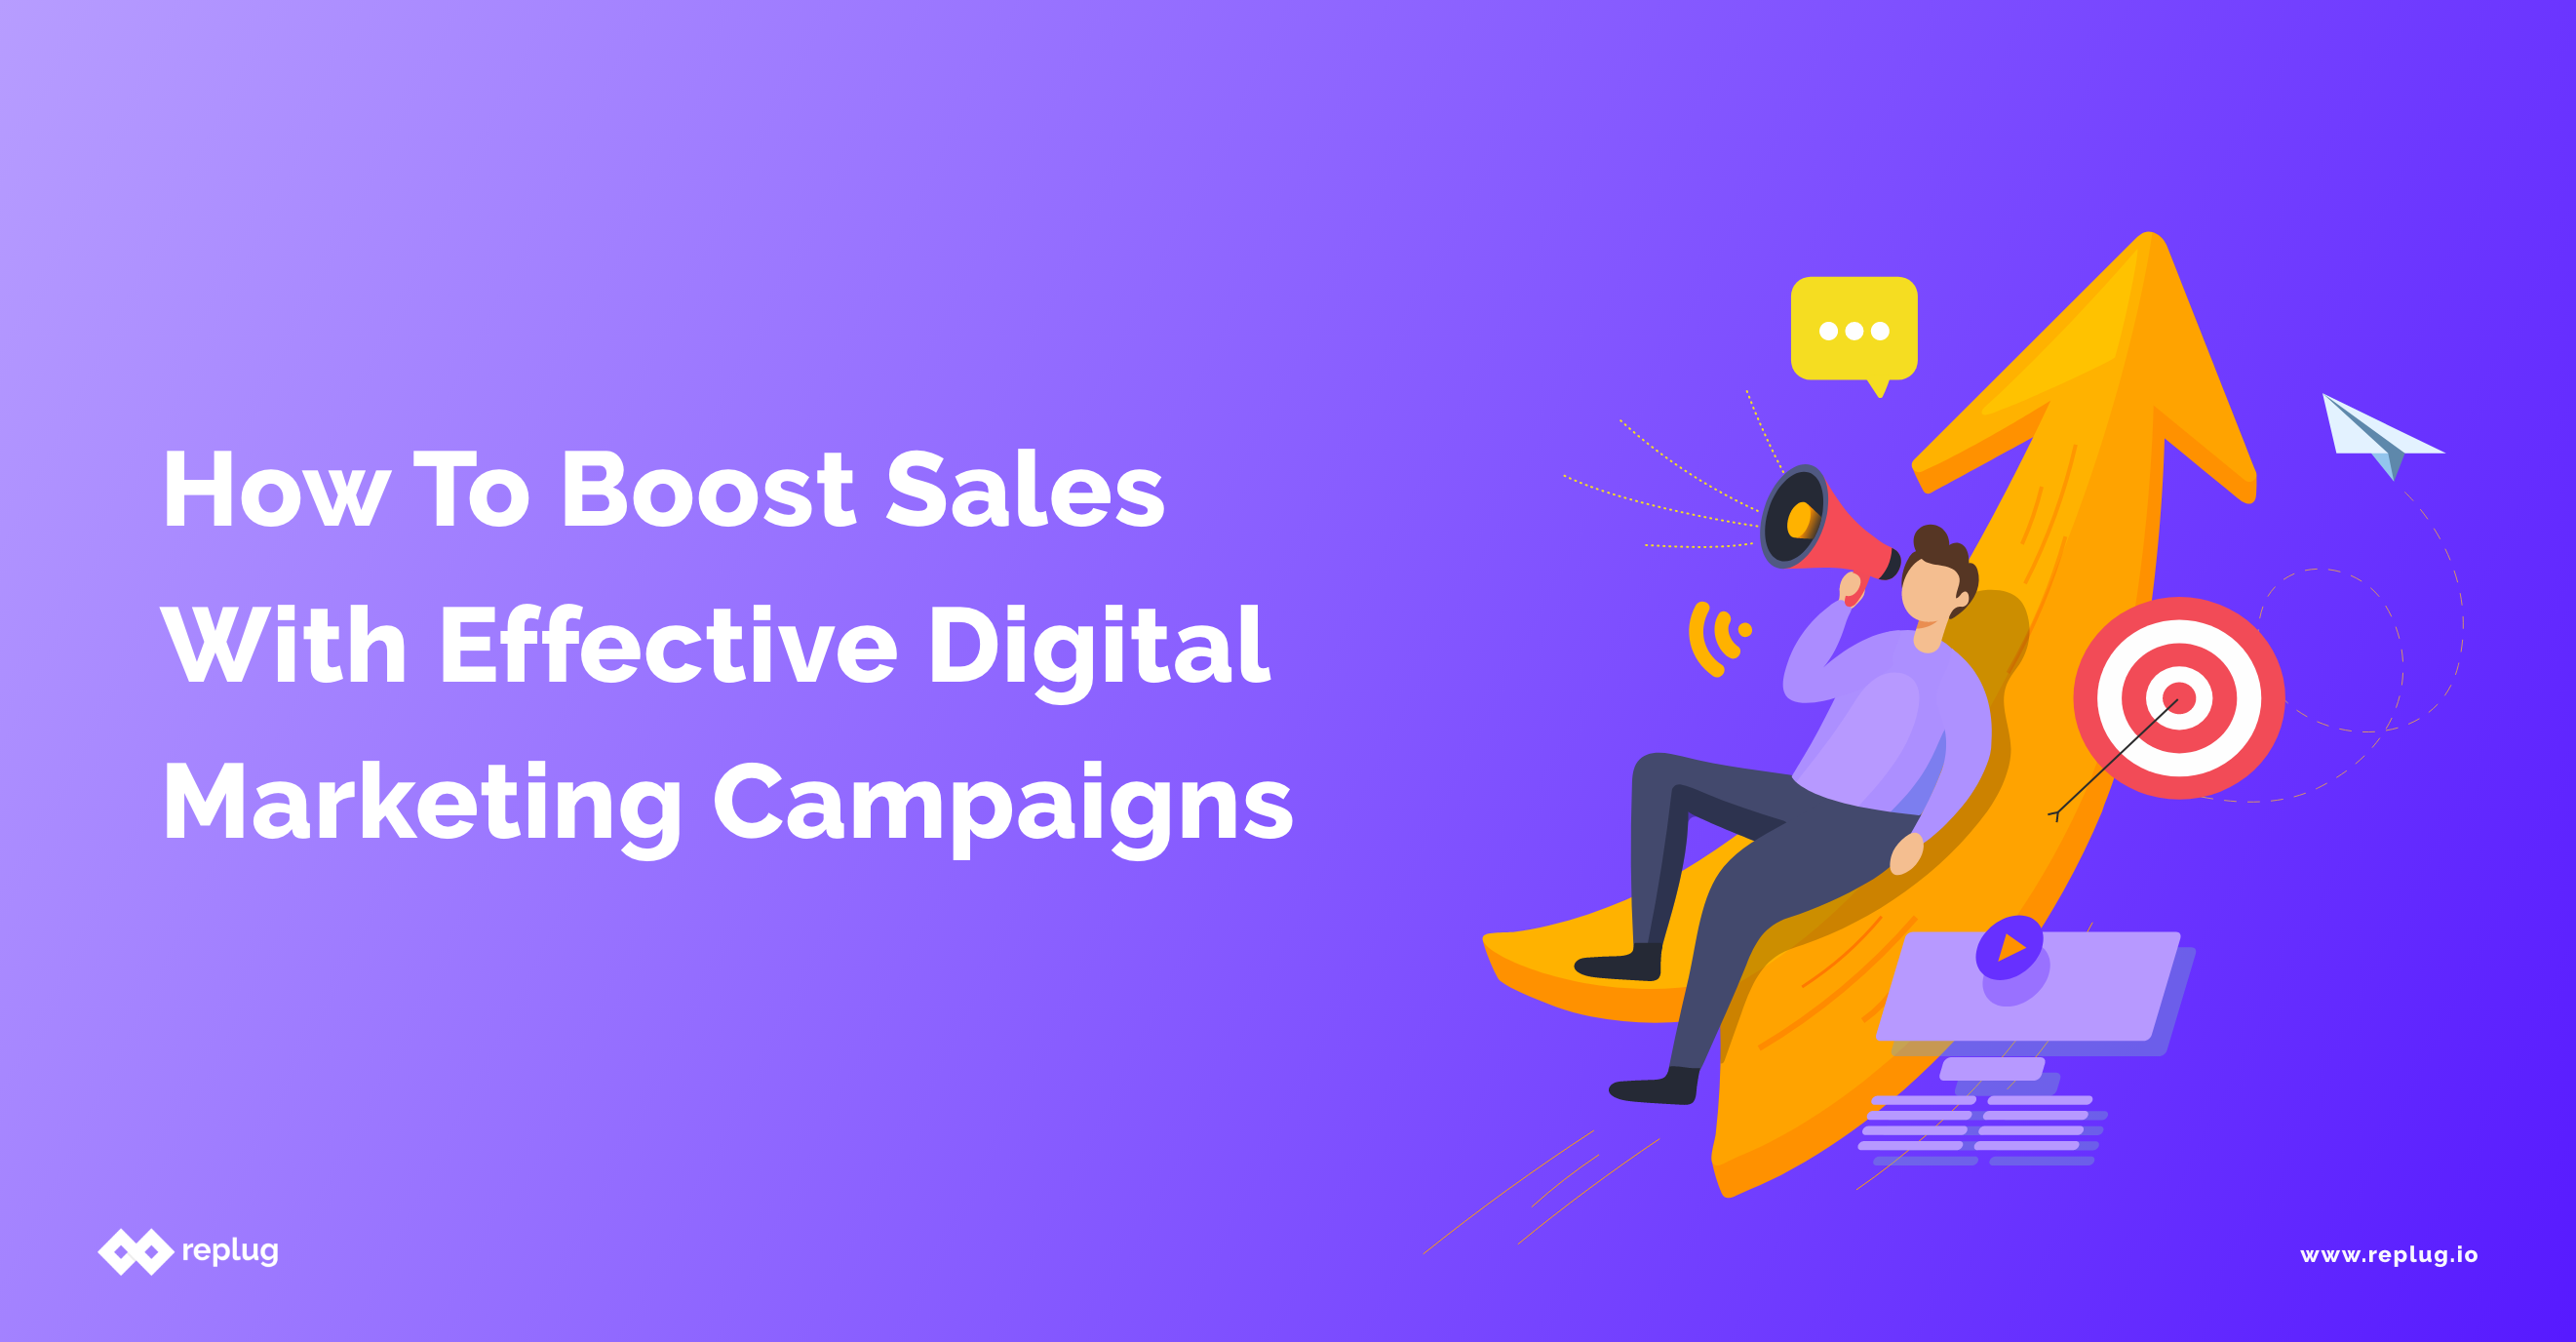 7 Effective Digital Marketing Strategies To Increase Online Sales